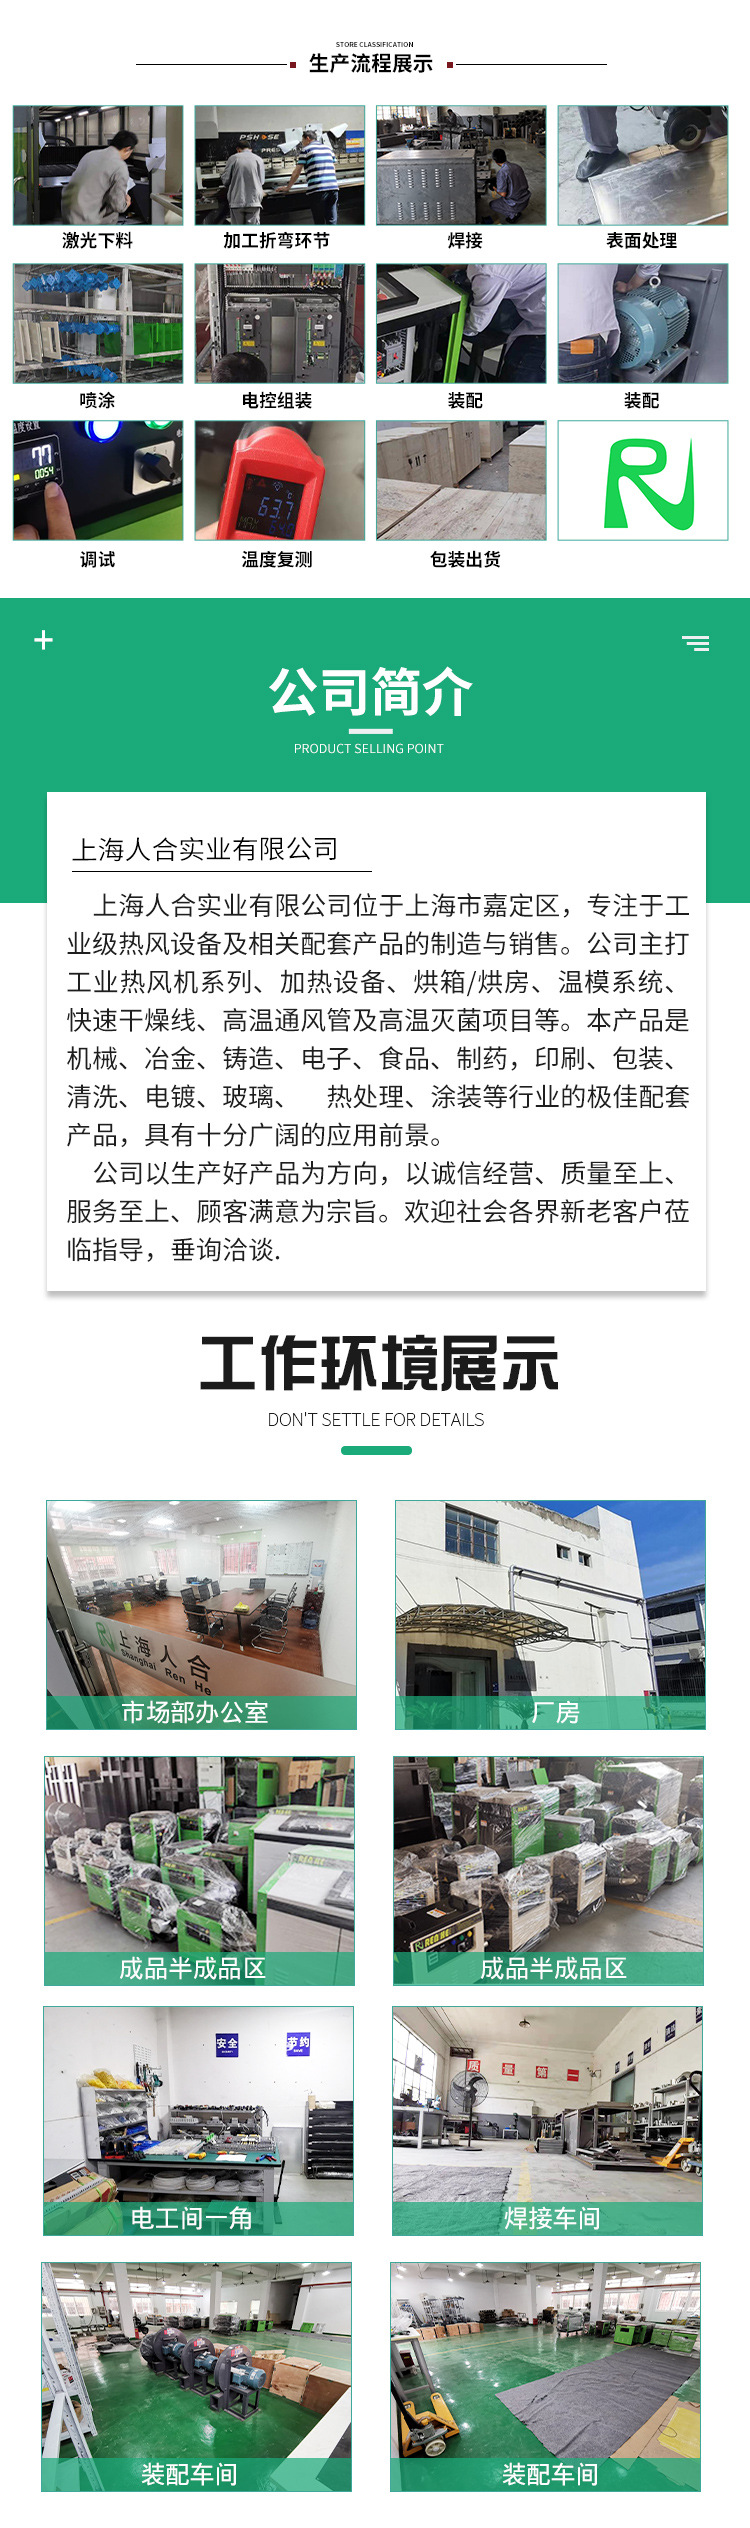 上海人合实业有限公司详情页.psd套版_10